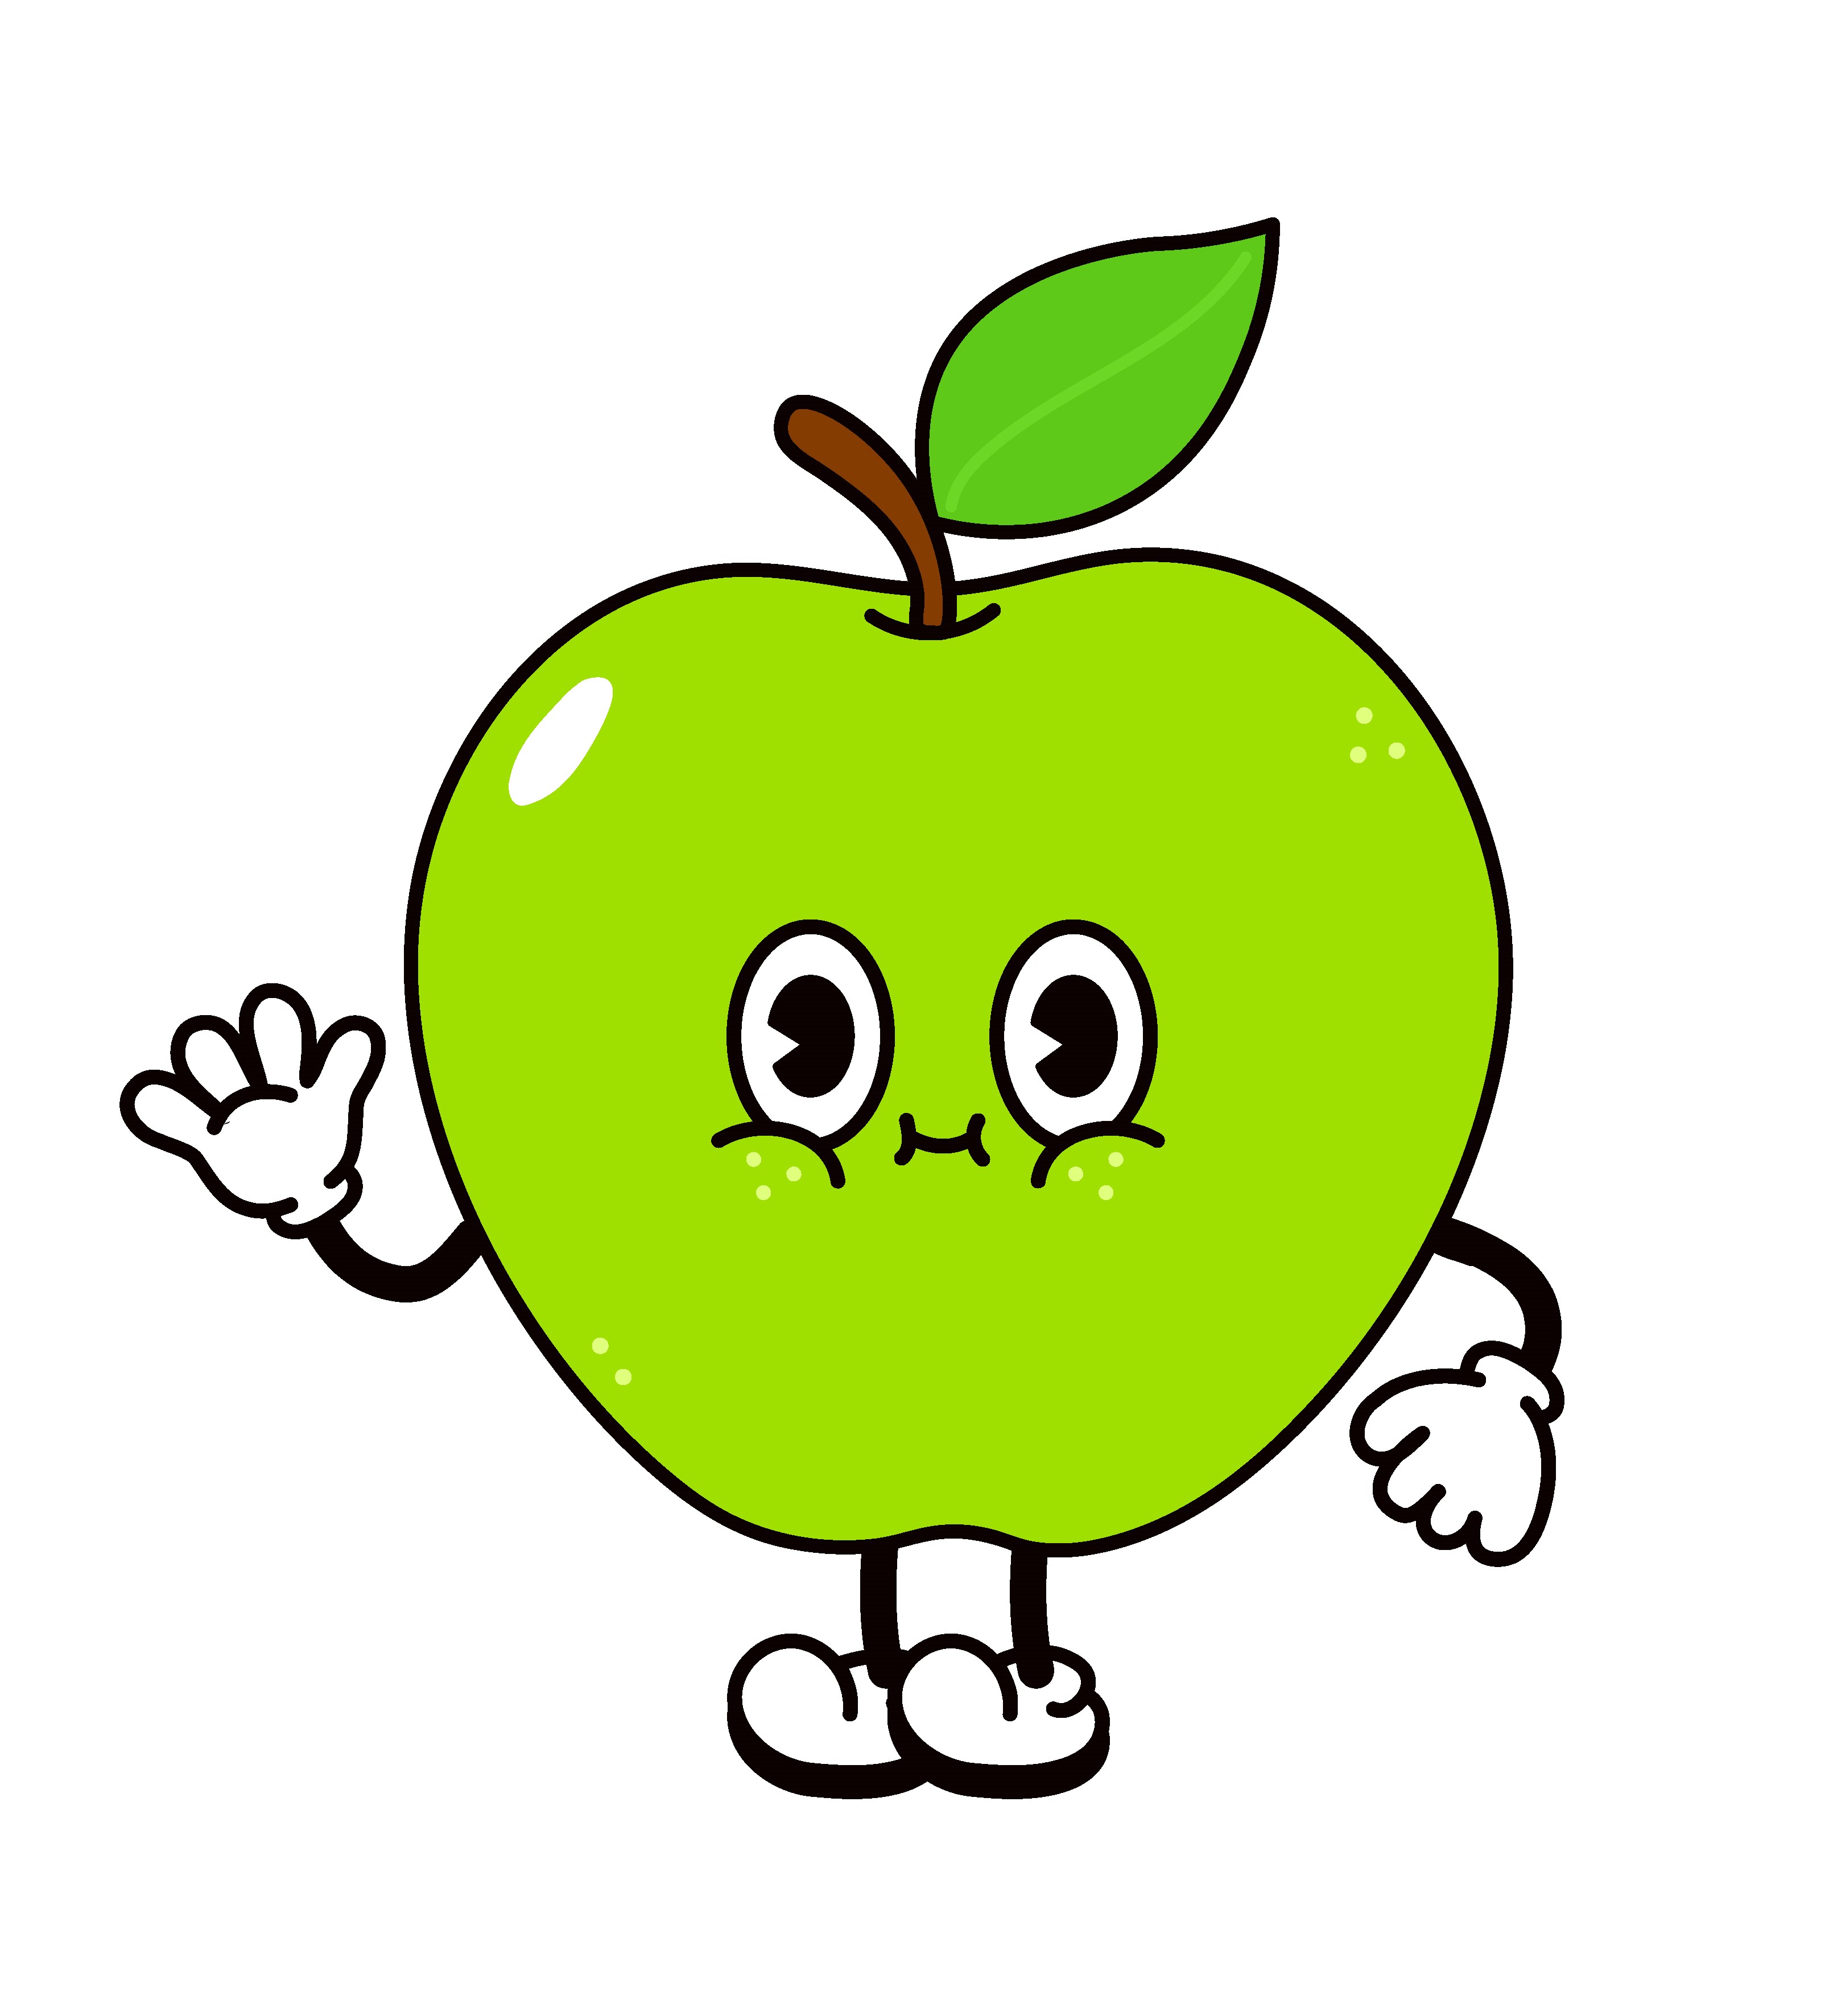 Раскраска милое яблоко с лицом машет рукой формата А4 в высоком качестве